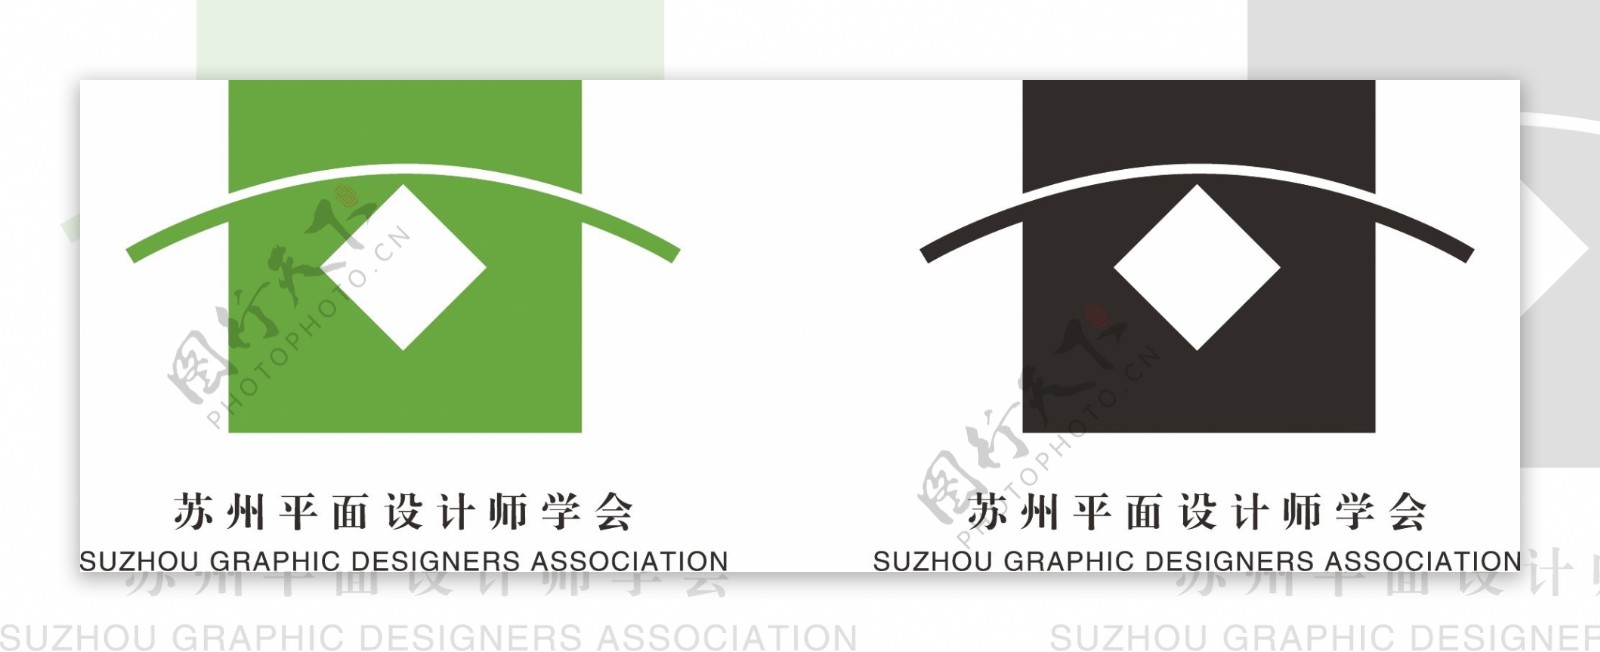 苏州平面设计师学会logo